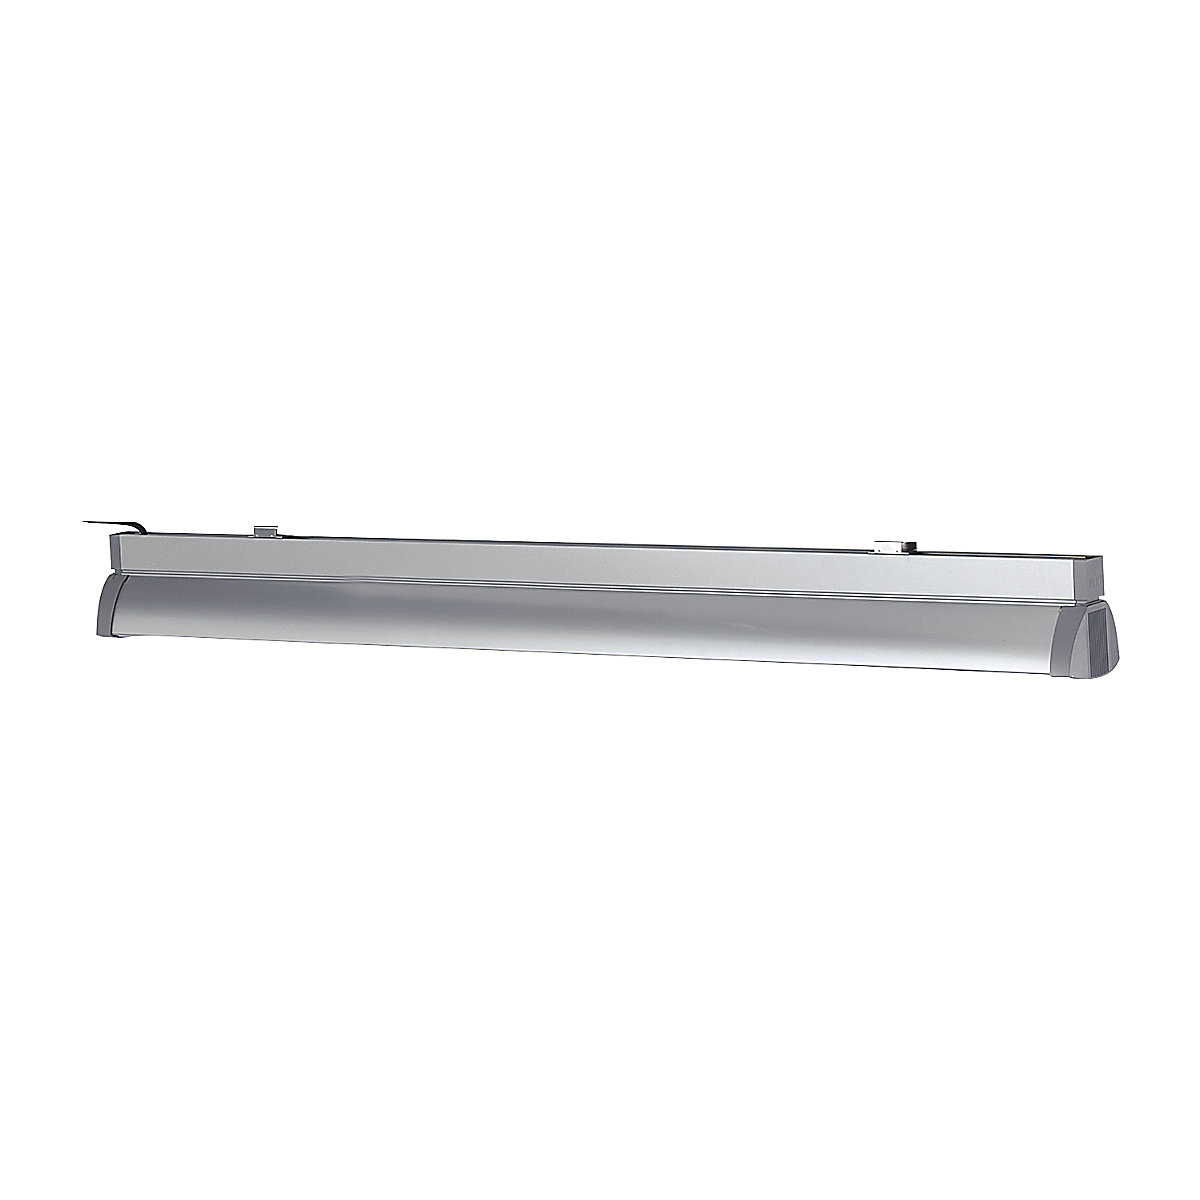 Iluminação para posto de trabalho – RAU, 2 lâmpadas fluorescentes de 54 W, comprimento 1200 mm, para largura da mesa de 1200 mm-3